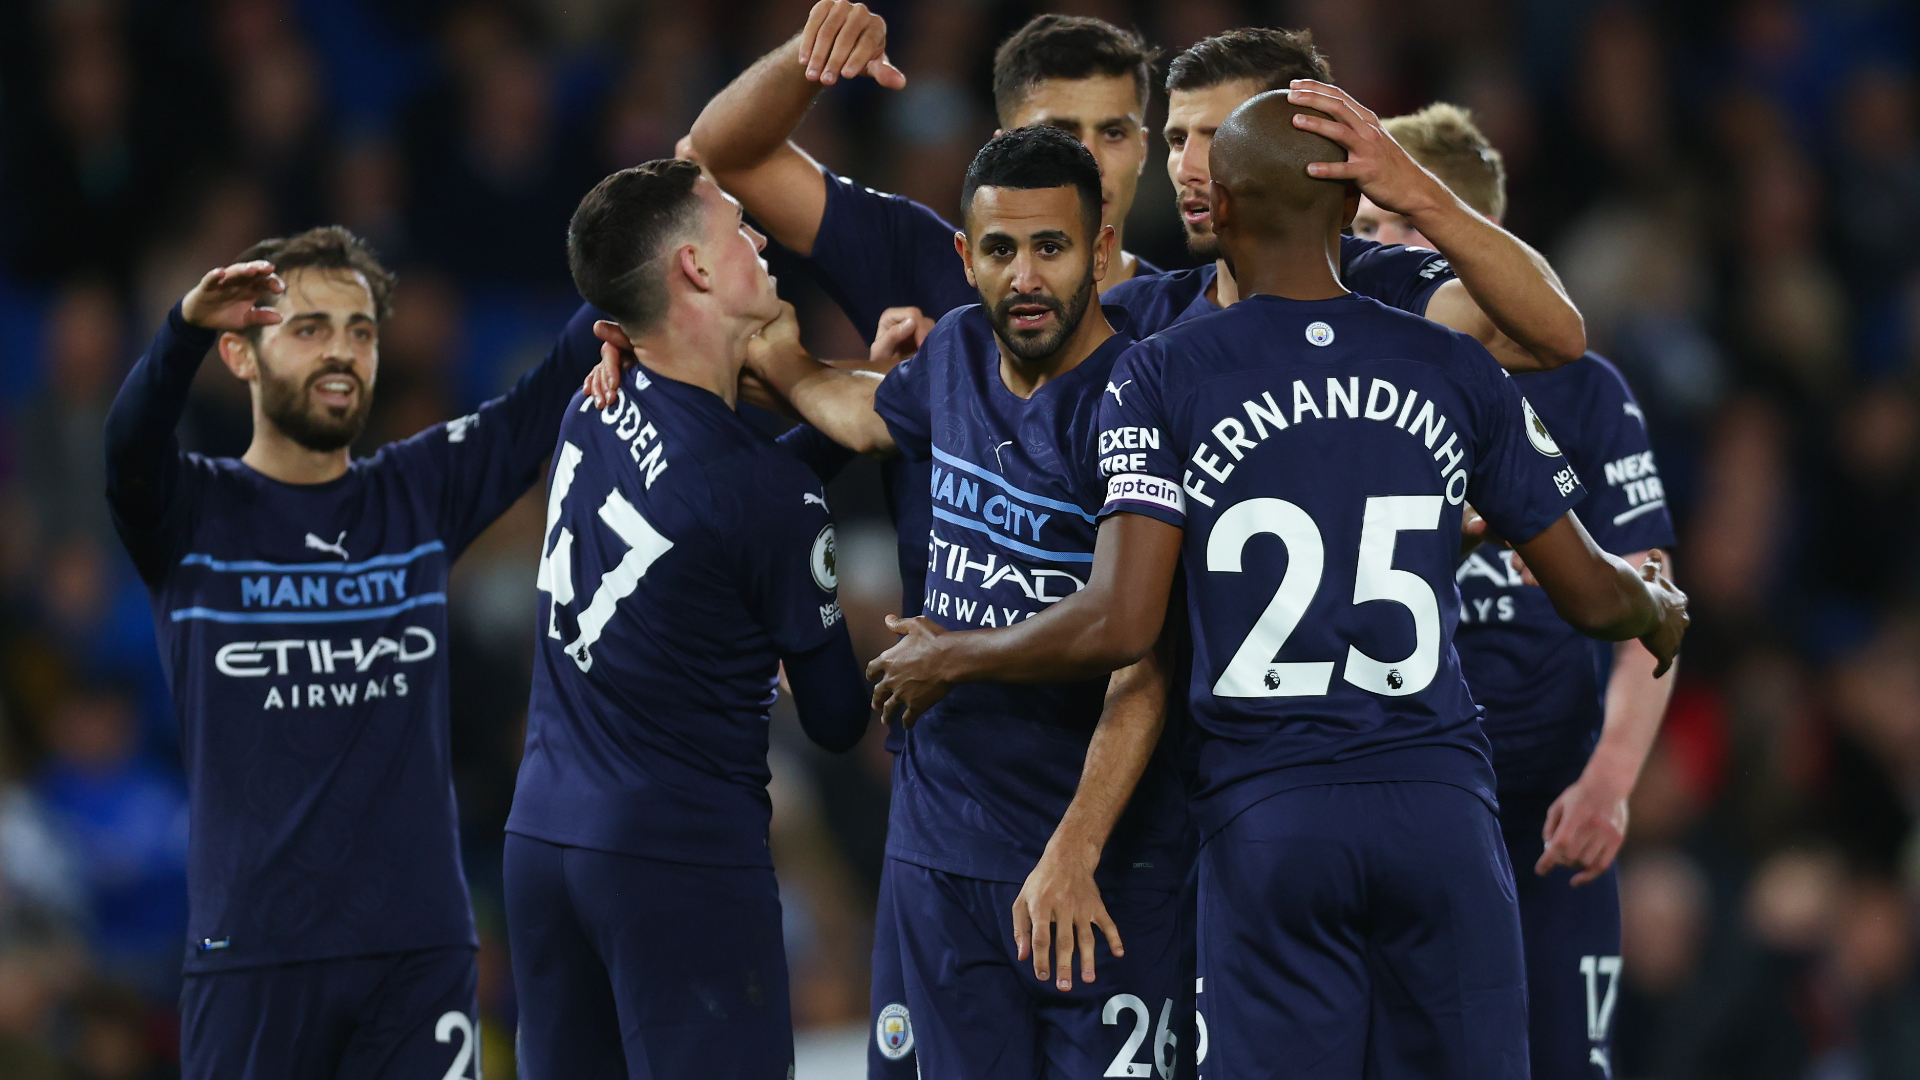 Tottenham 1-4 Chelsea, Highlights - EXTENDED